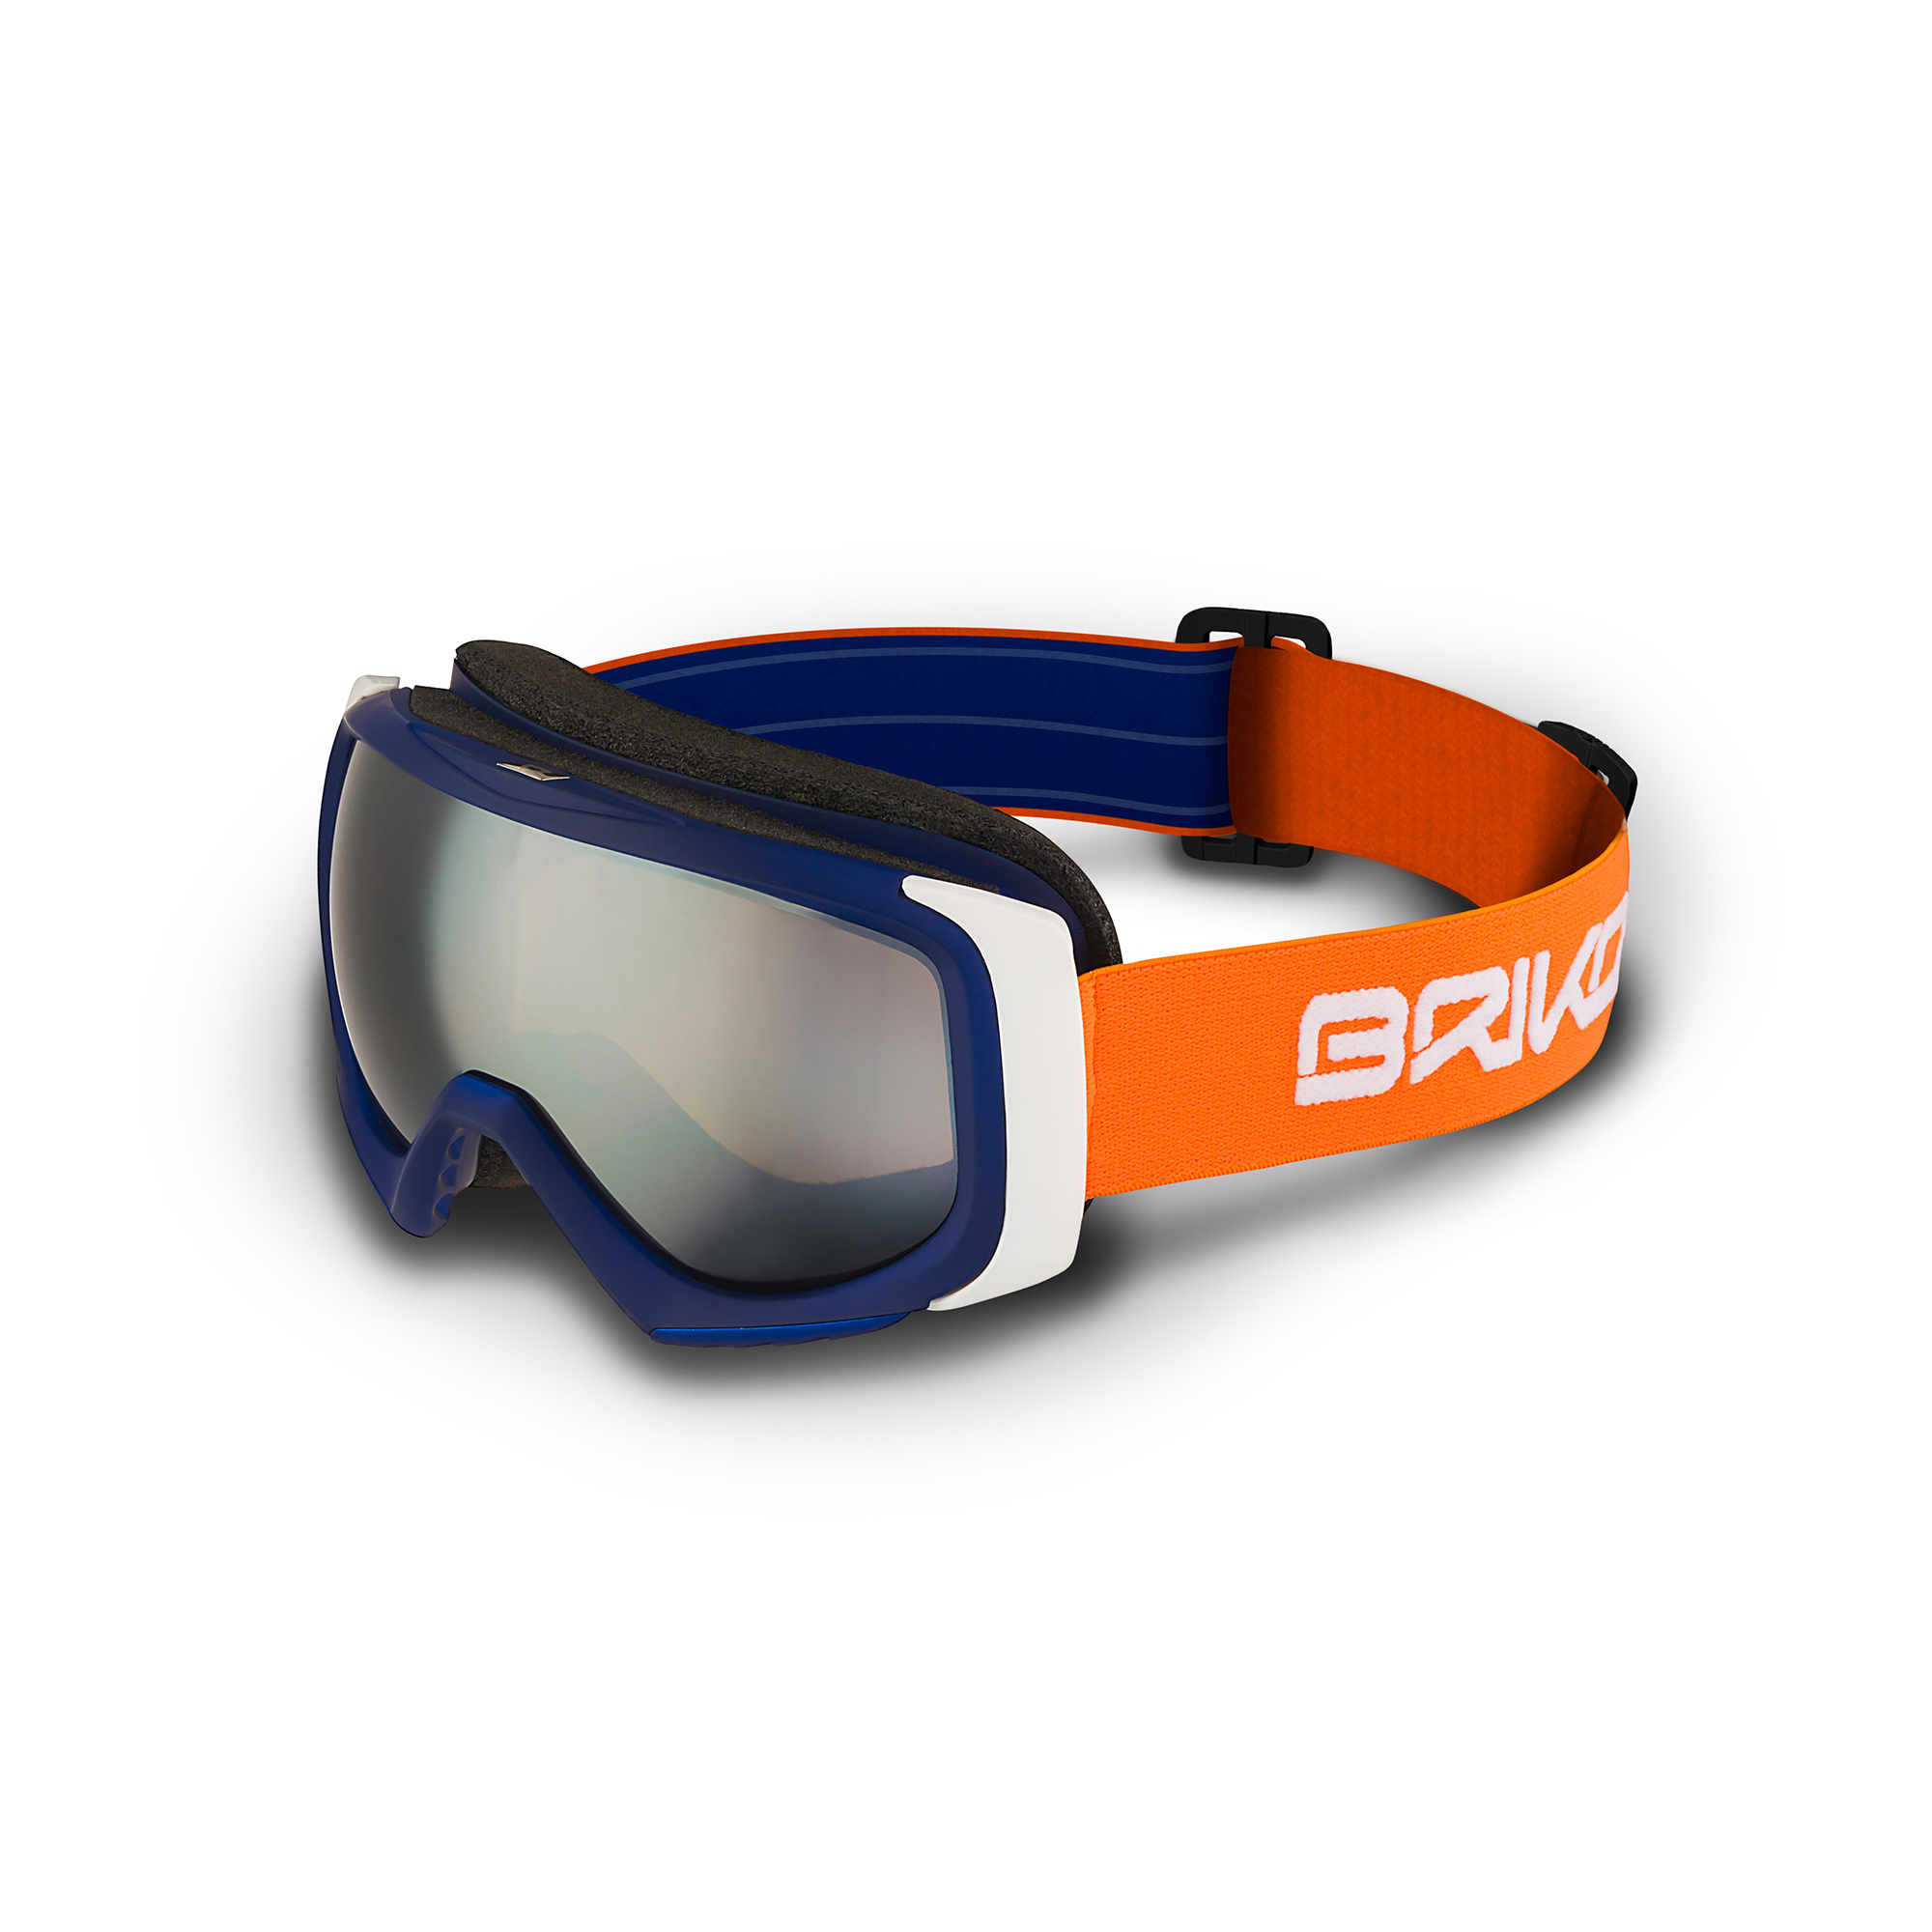  Snowboard Goggles	 -  briko Sniper 701